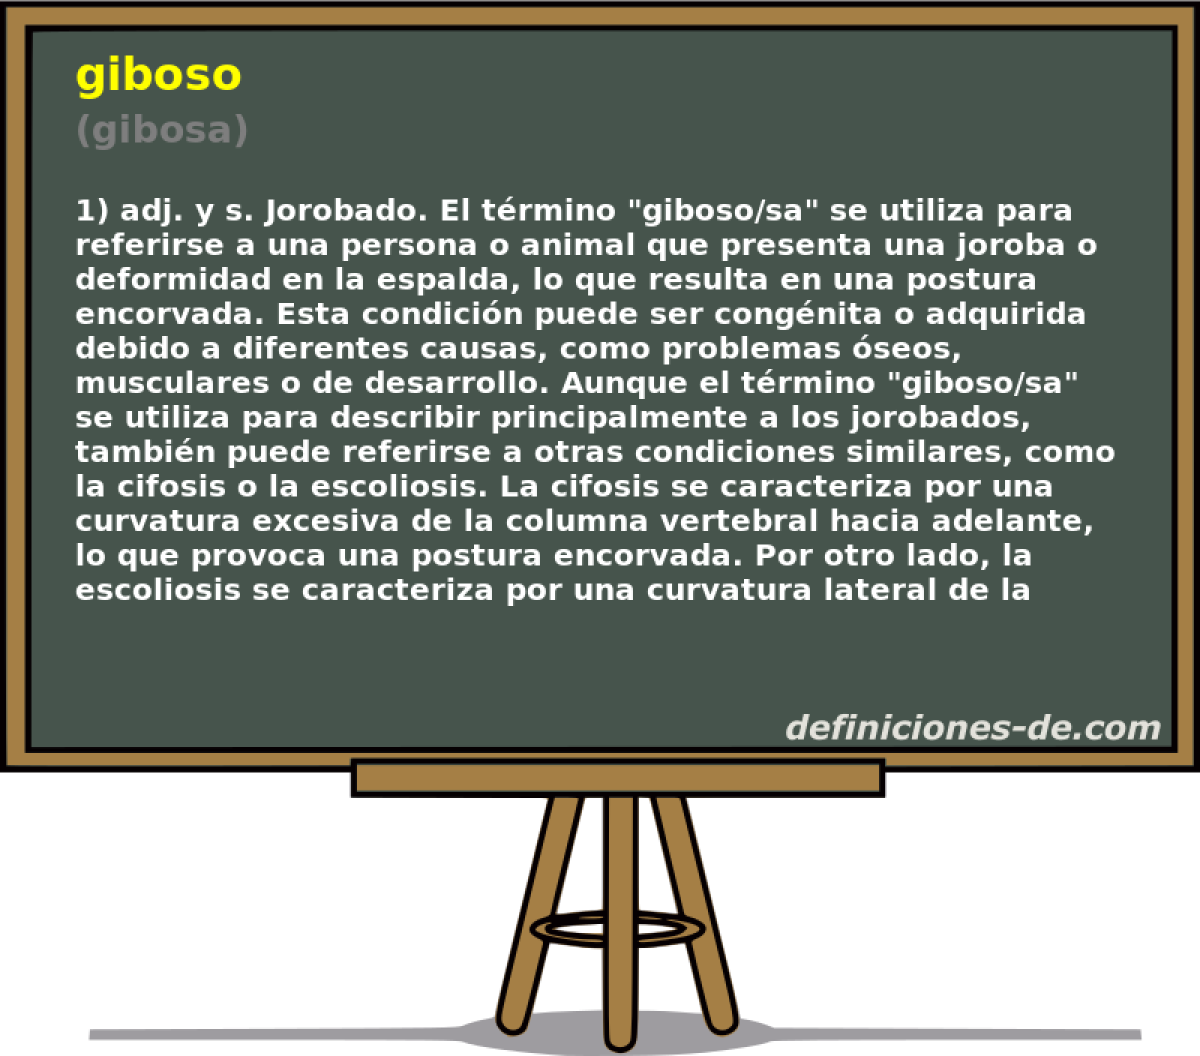 giboso (gibosa)